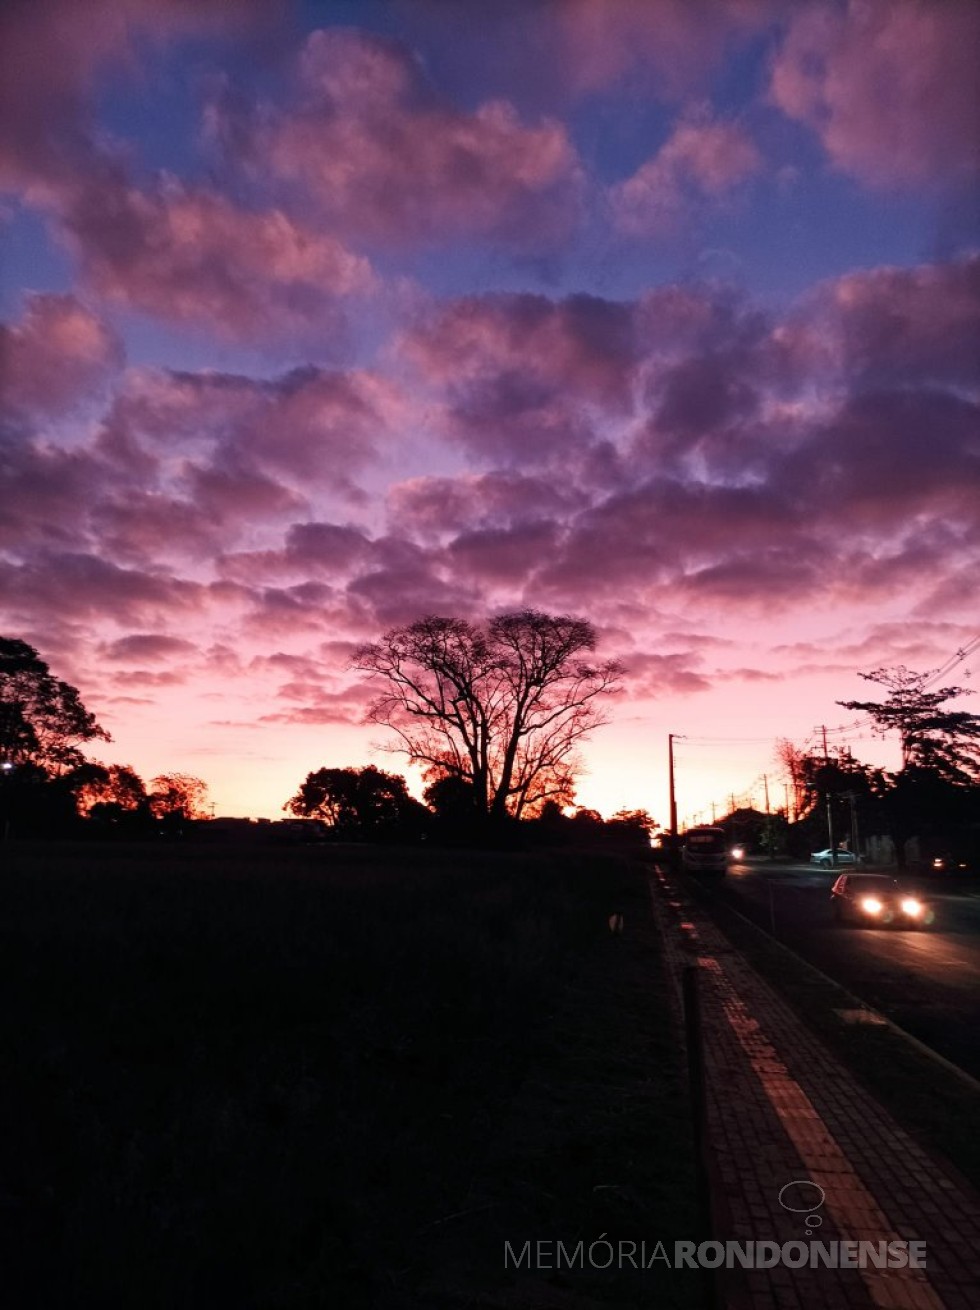 || Pôr do sol avistado de outro ponto da cidade de Marechal Cândido Rondon, em 22 de agosto de 2022.
Imagem: Acervo e crédito Valdemir José Sonda - FOTO 12 - 